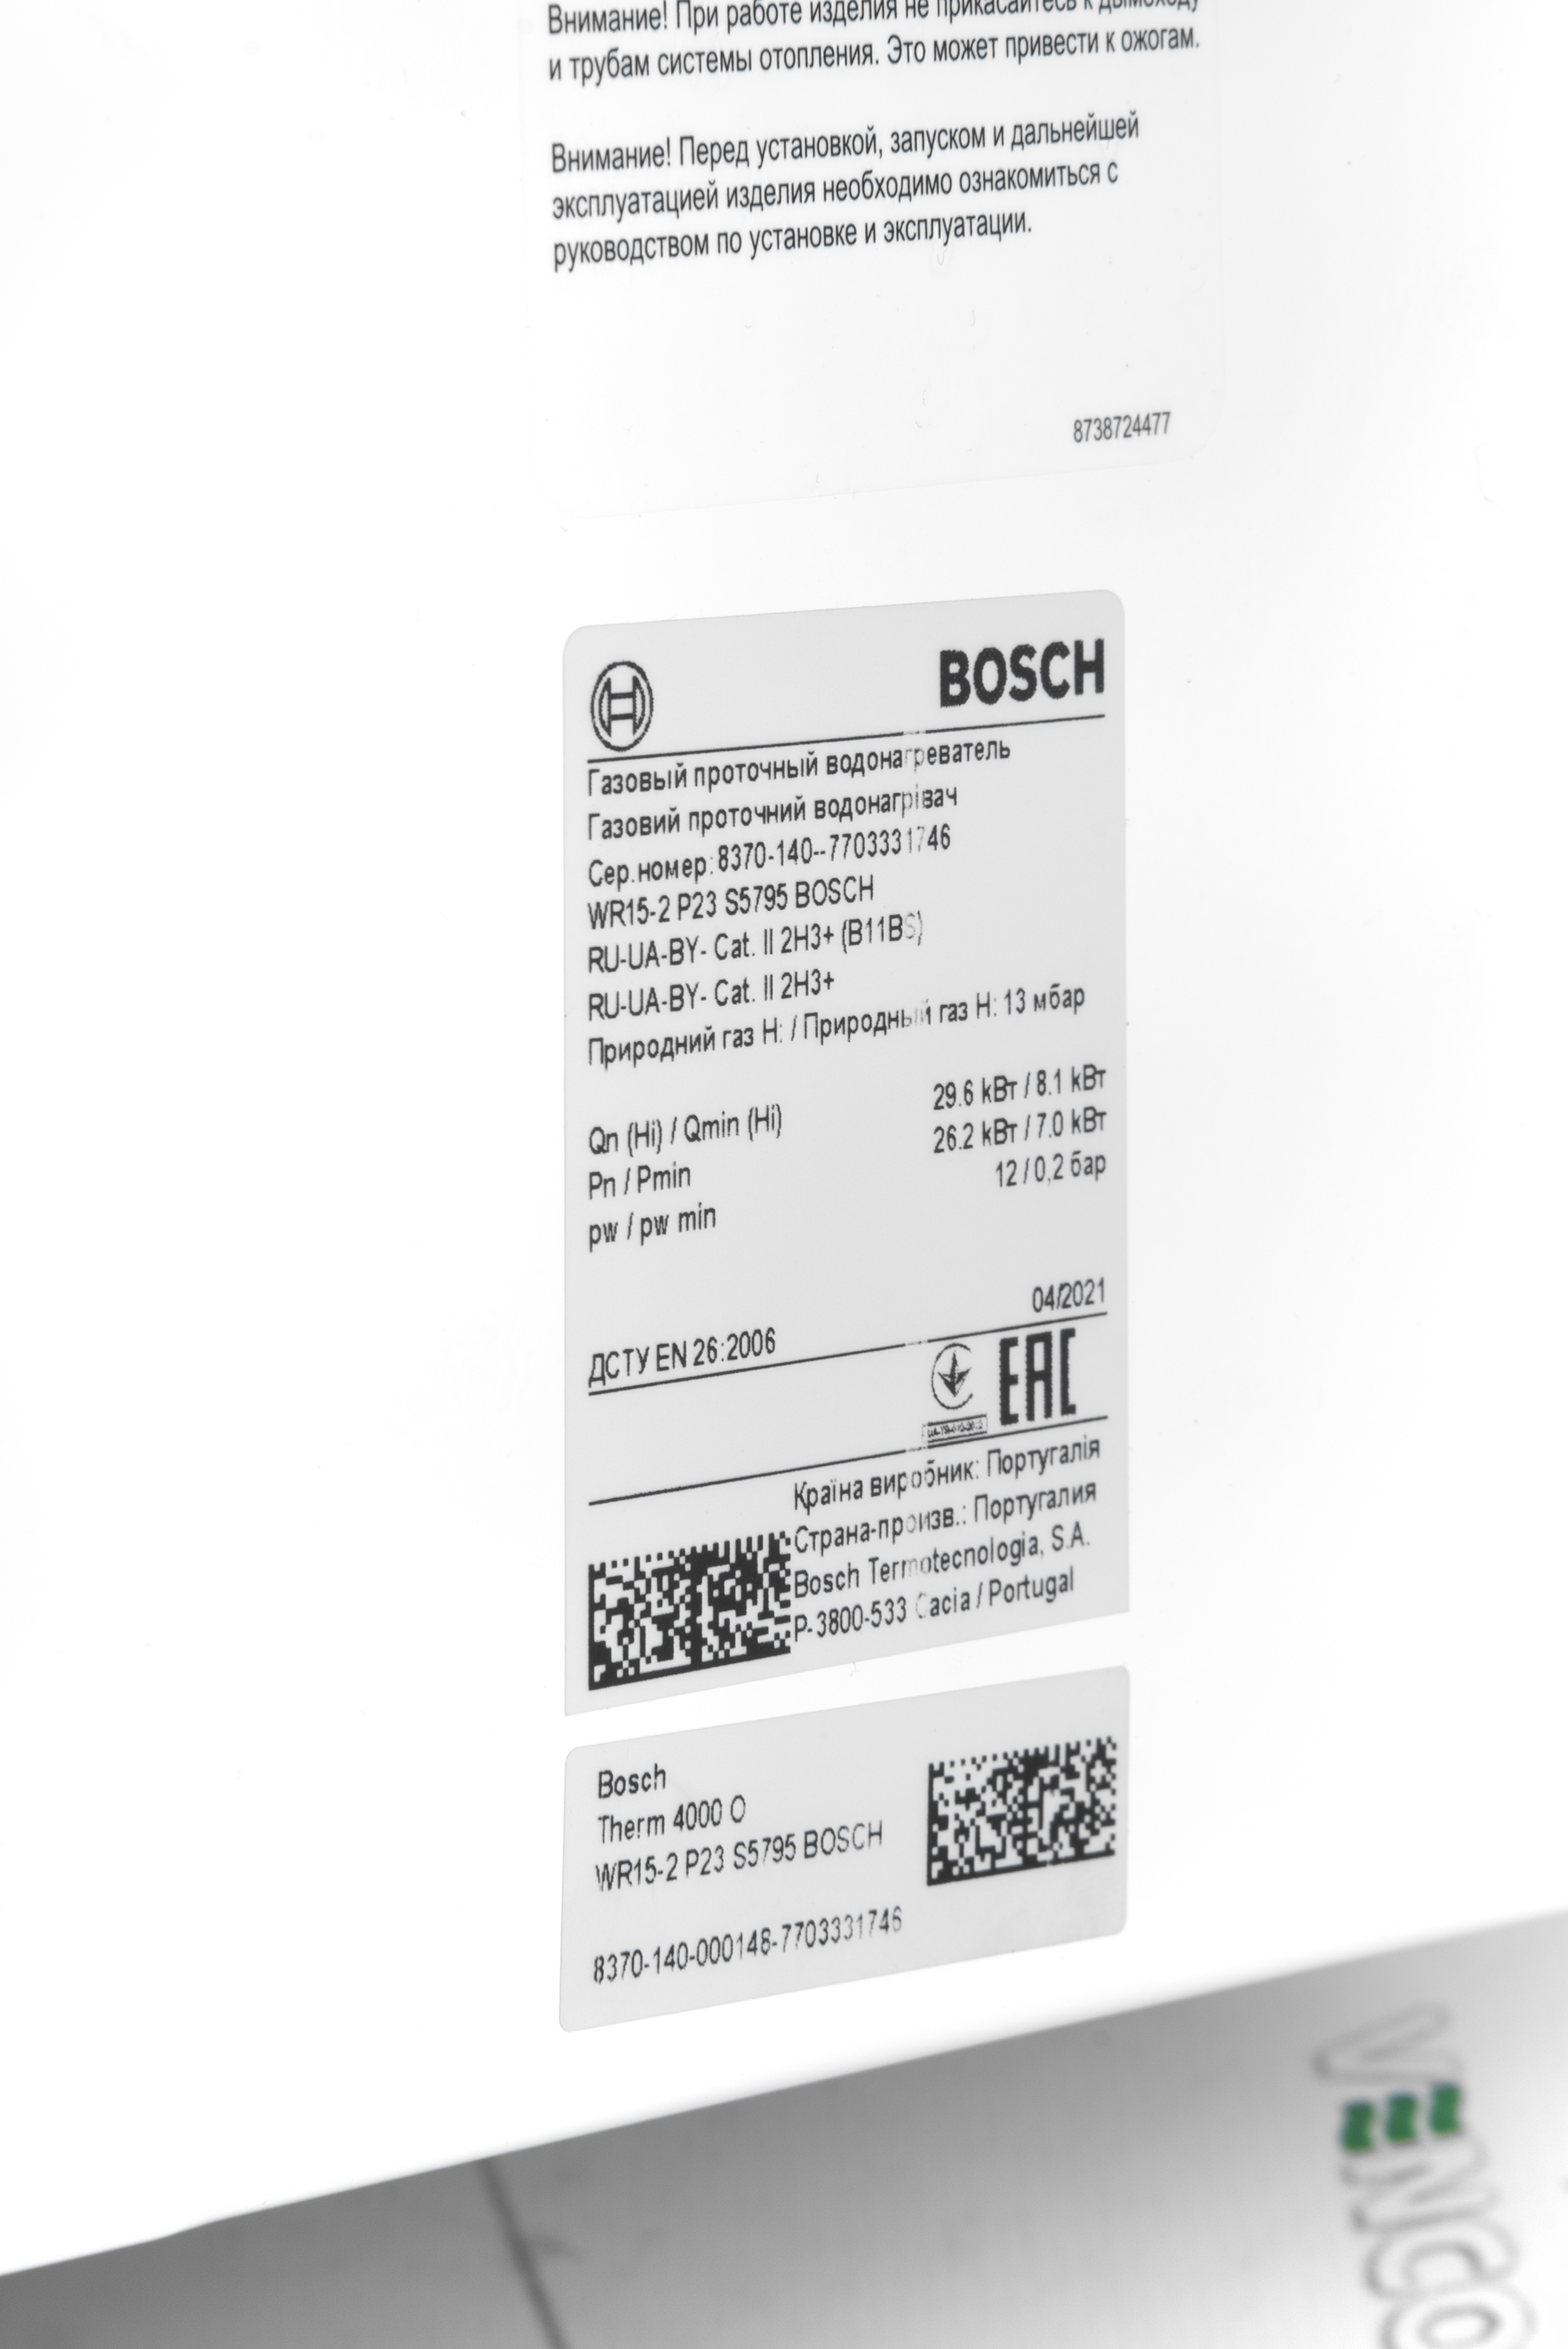 продаём Bosch Therm 4000 O WR 15-2 P (7703331746) в Украине - фото 4